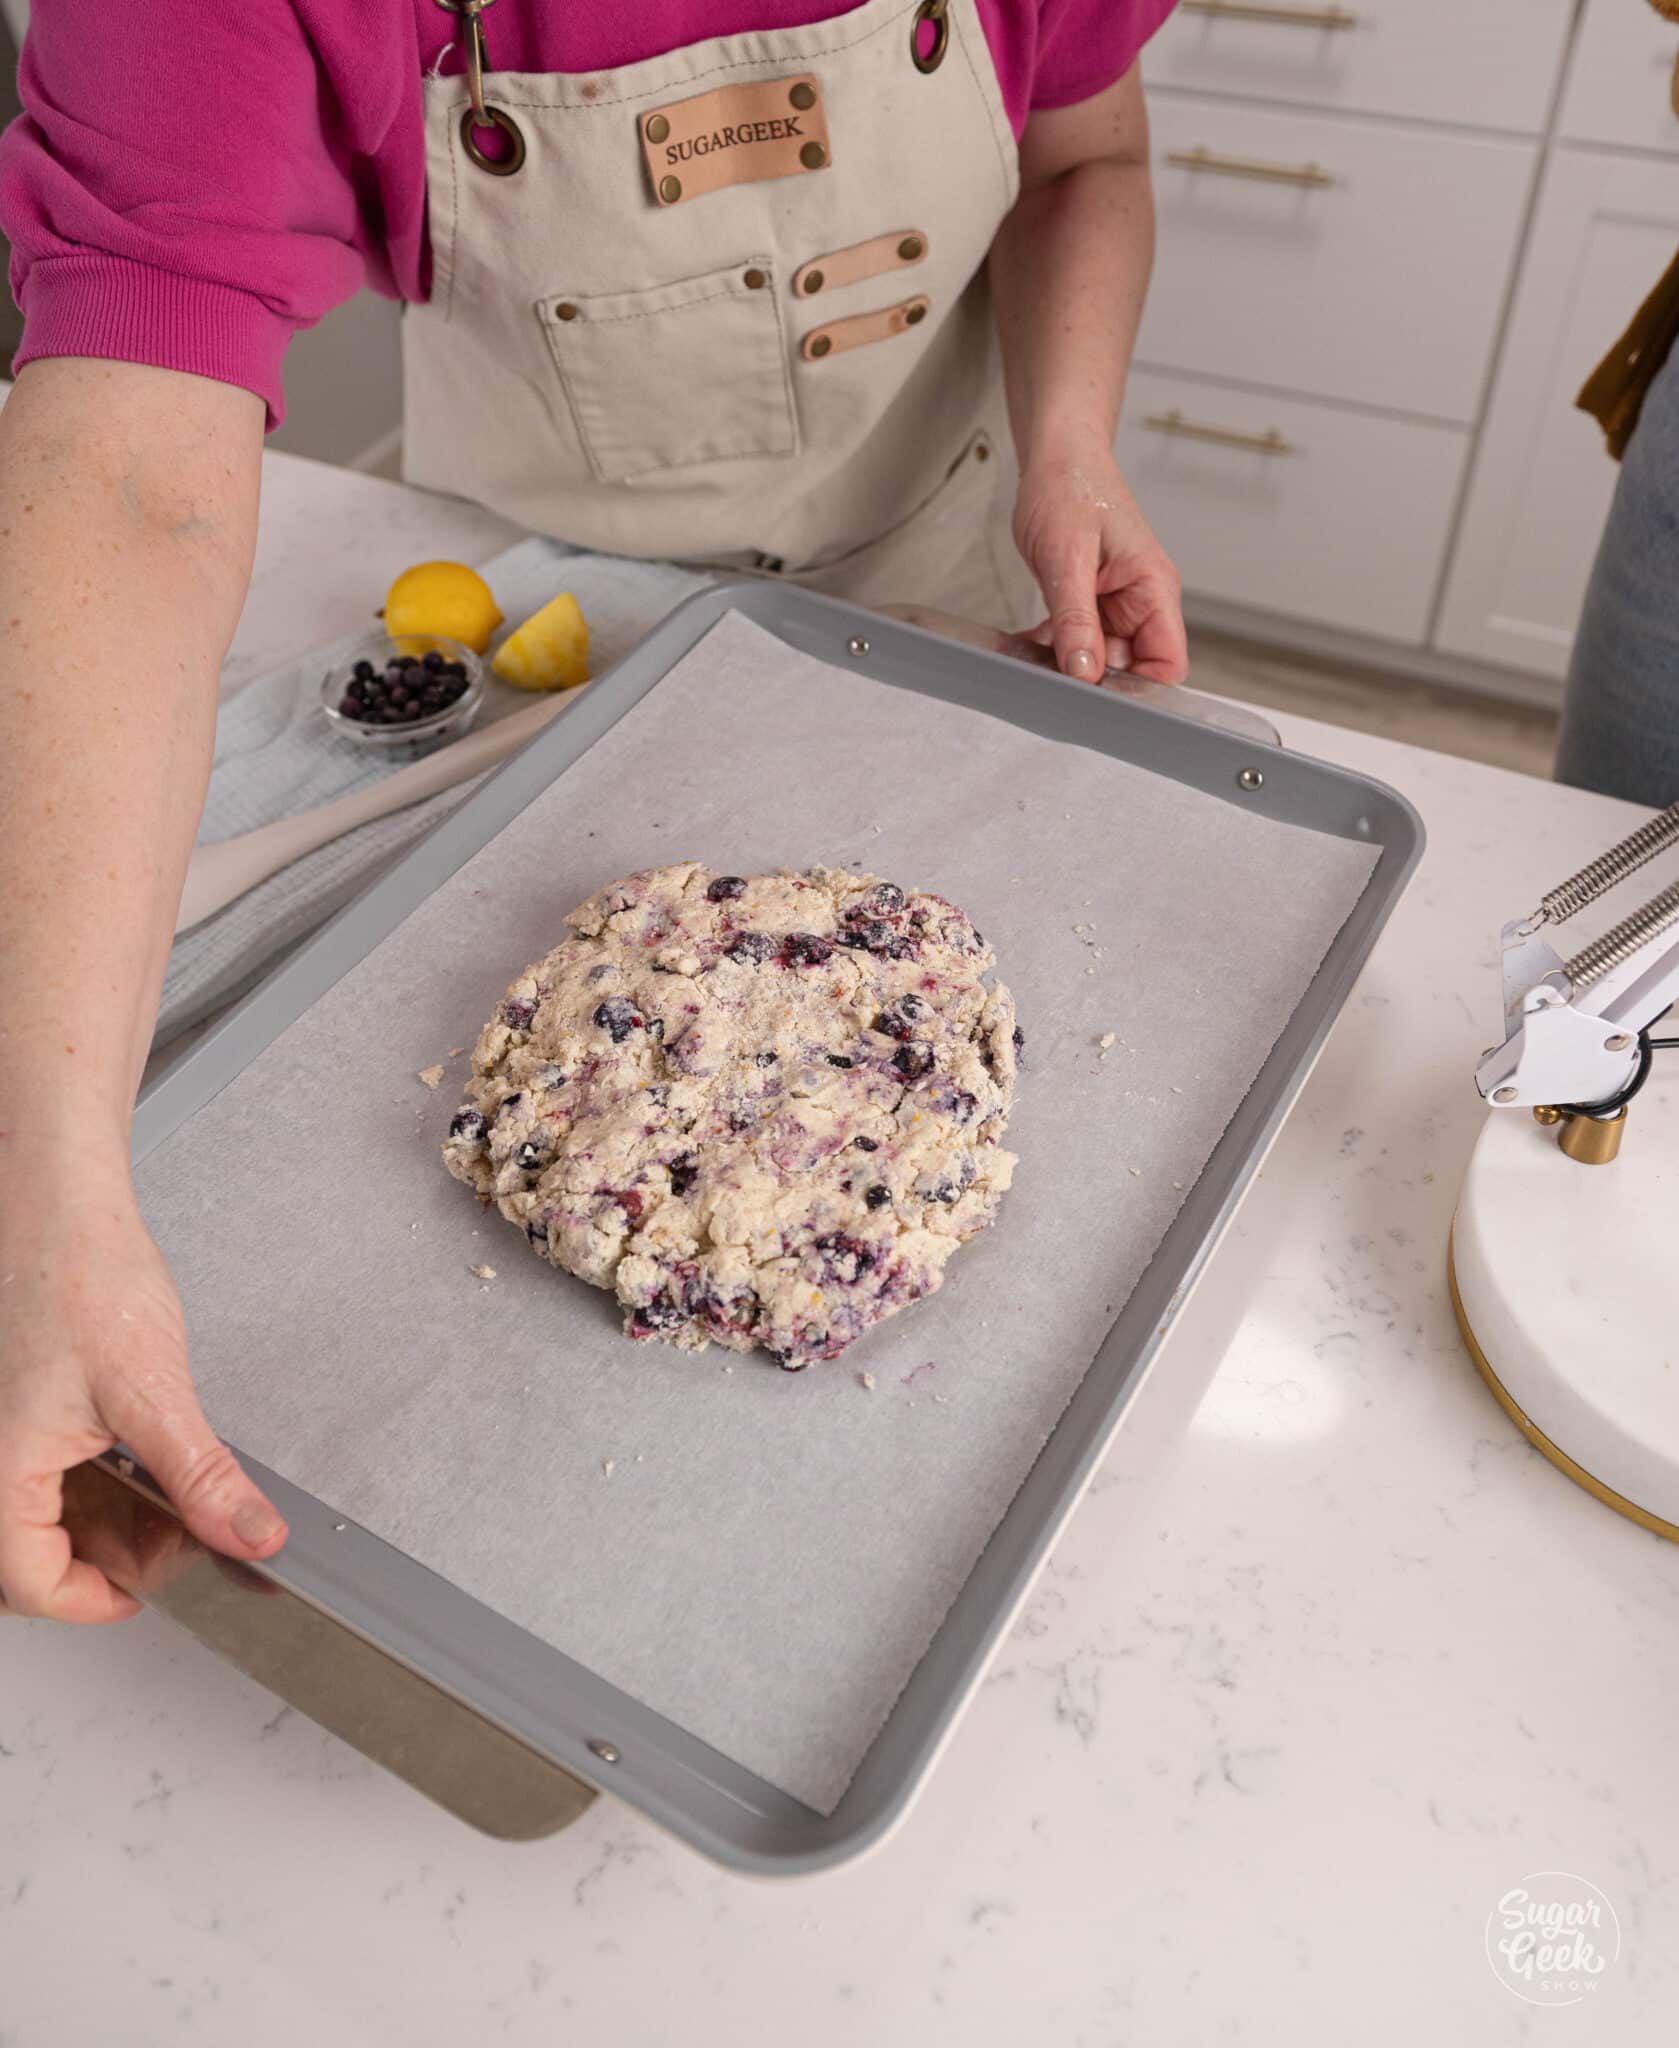 8" mound of scone dough on a sheet pan